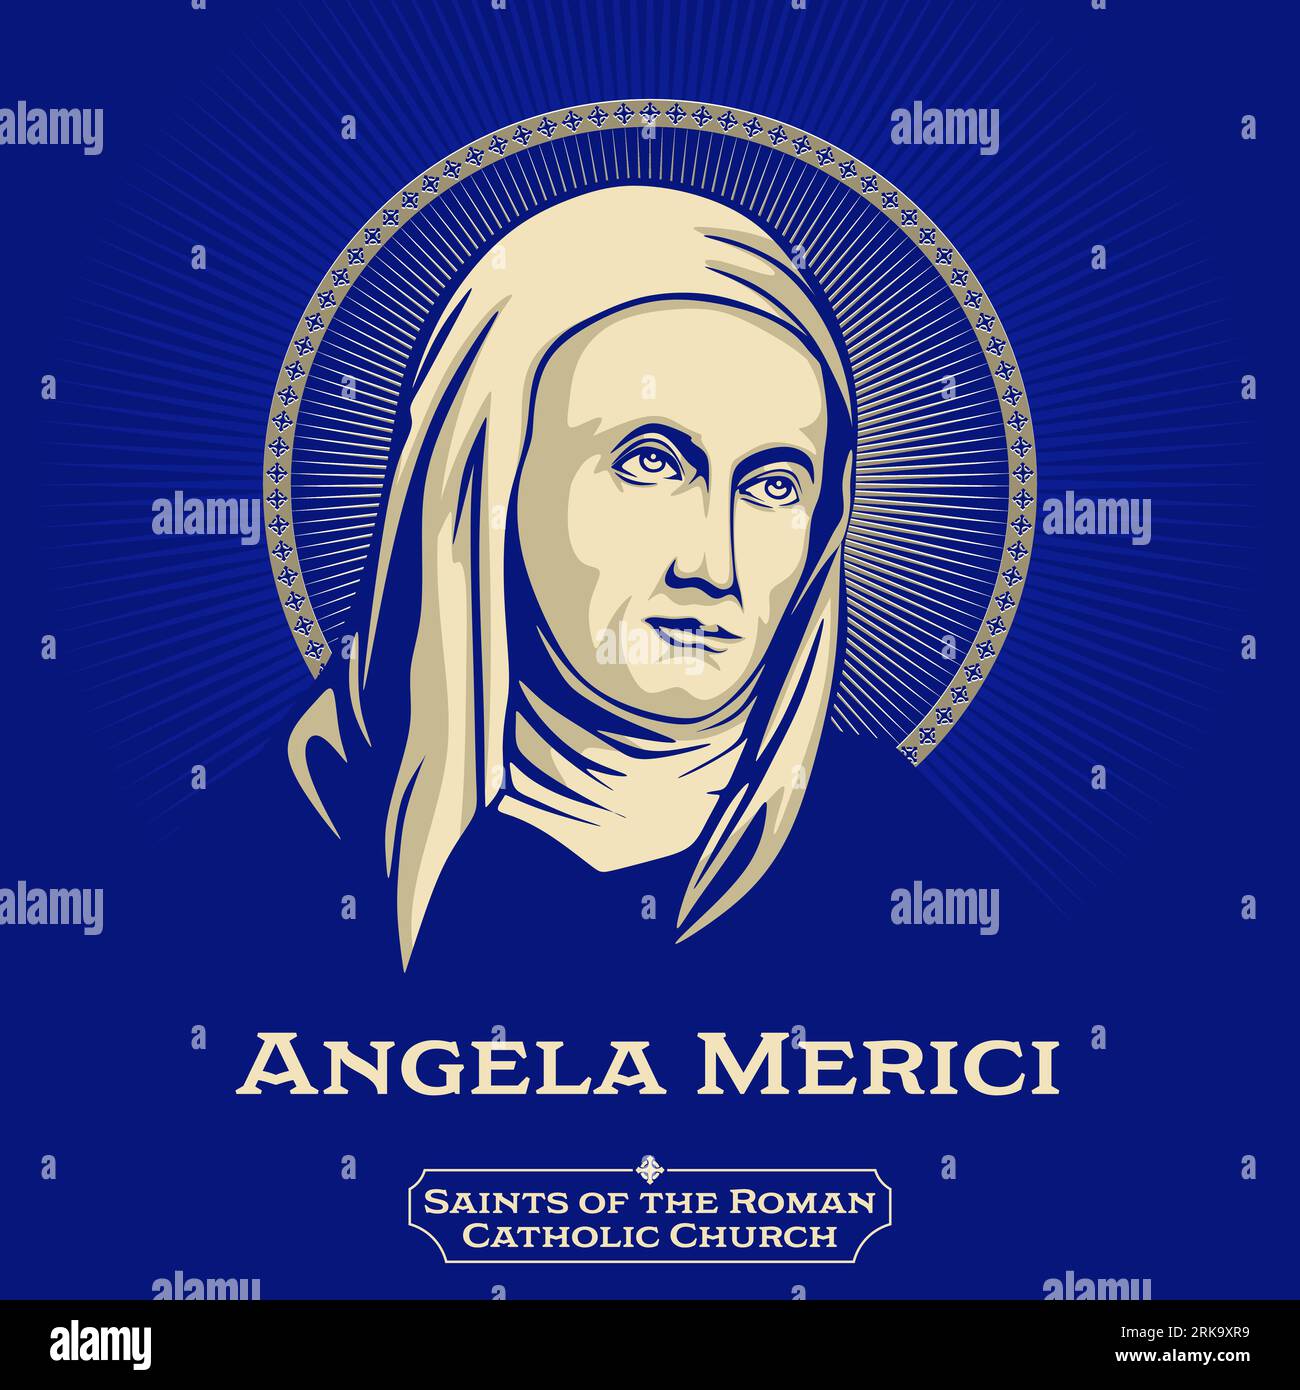 Saints catholiques. Angela Merici (1474-1540) était une éducatrice religieuse italienne honorée comme sainte par l'Église catholique. Illustration de Vecteur